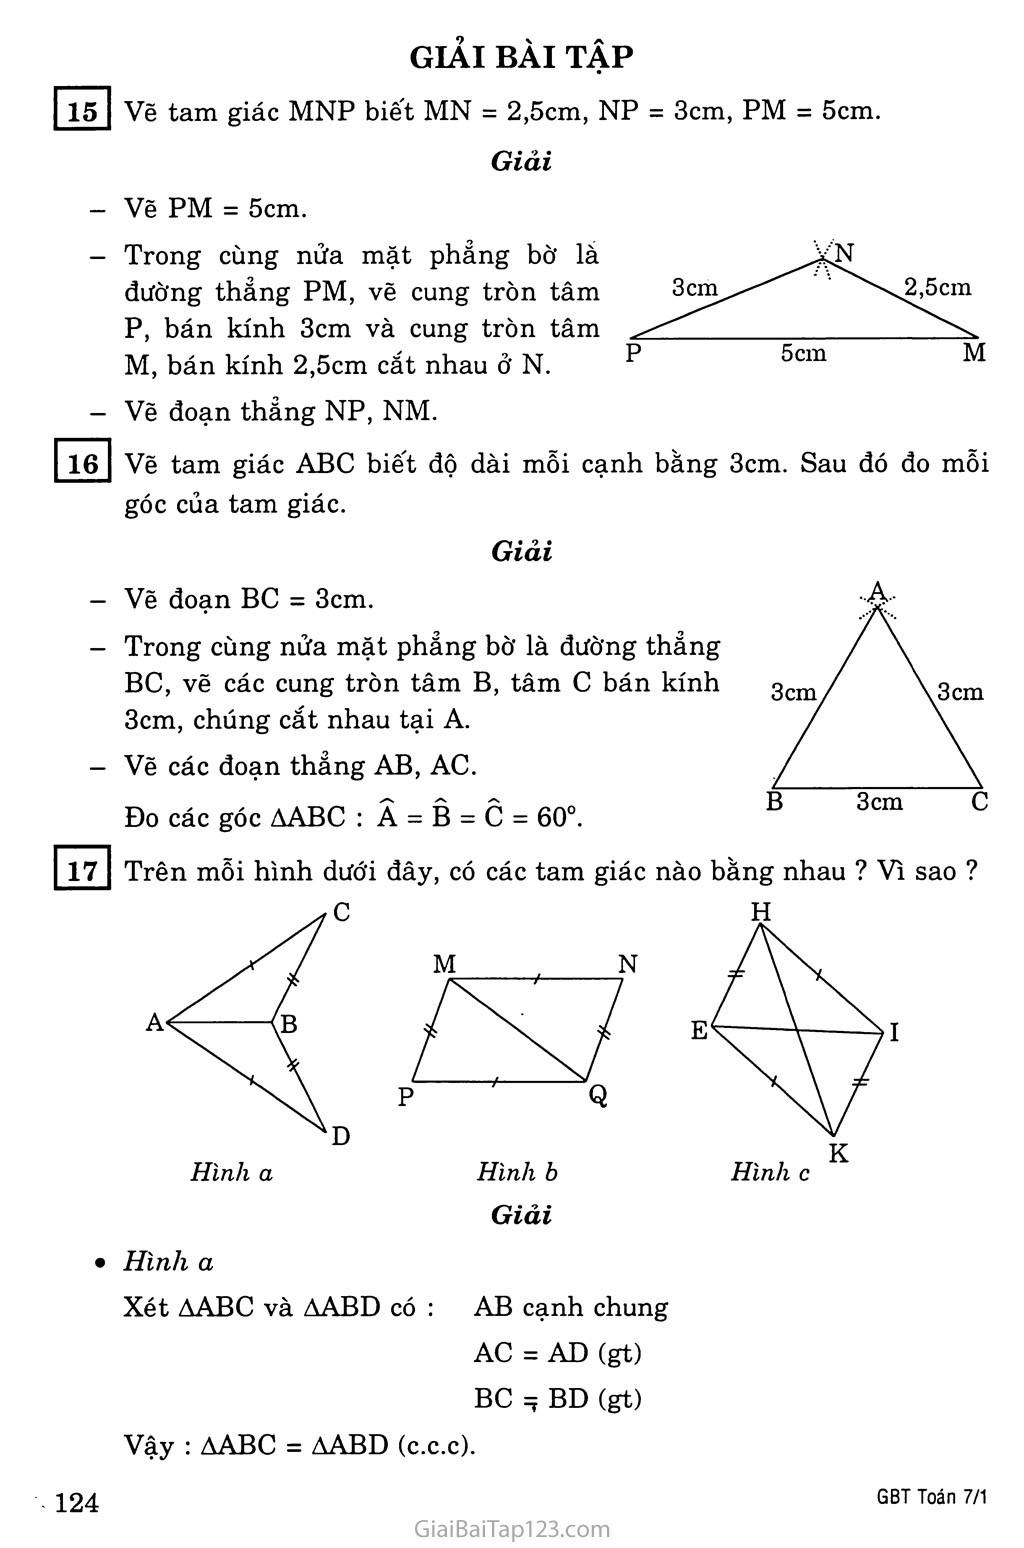 §3. Trường hợp bằng nhau thứ nhất của tam giác: cạnh - cạnh - cạnh (c.c.c) trang 2